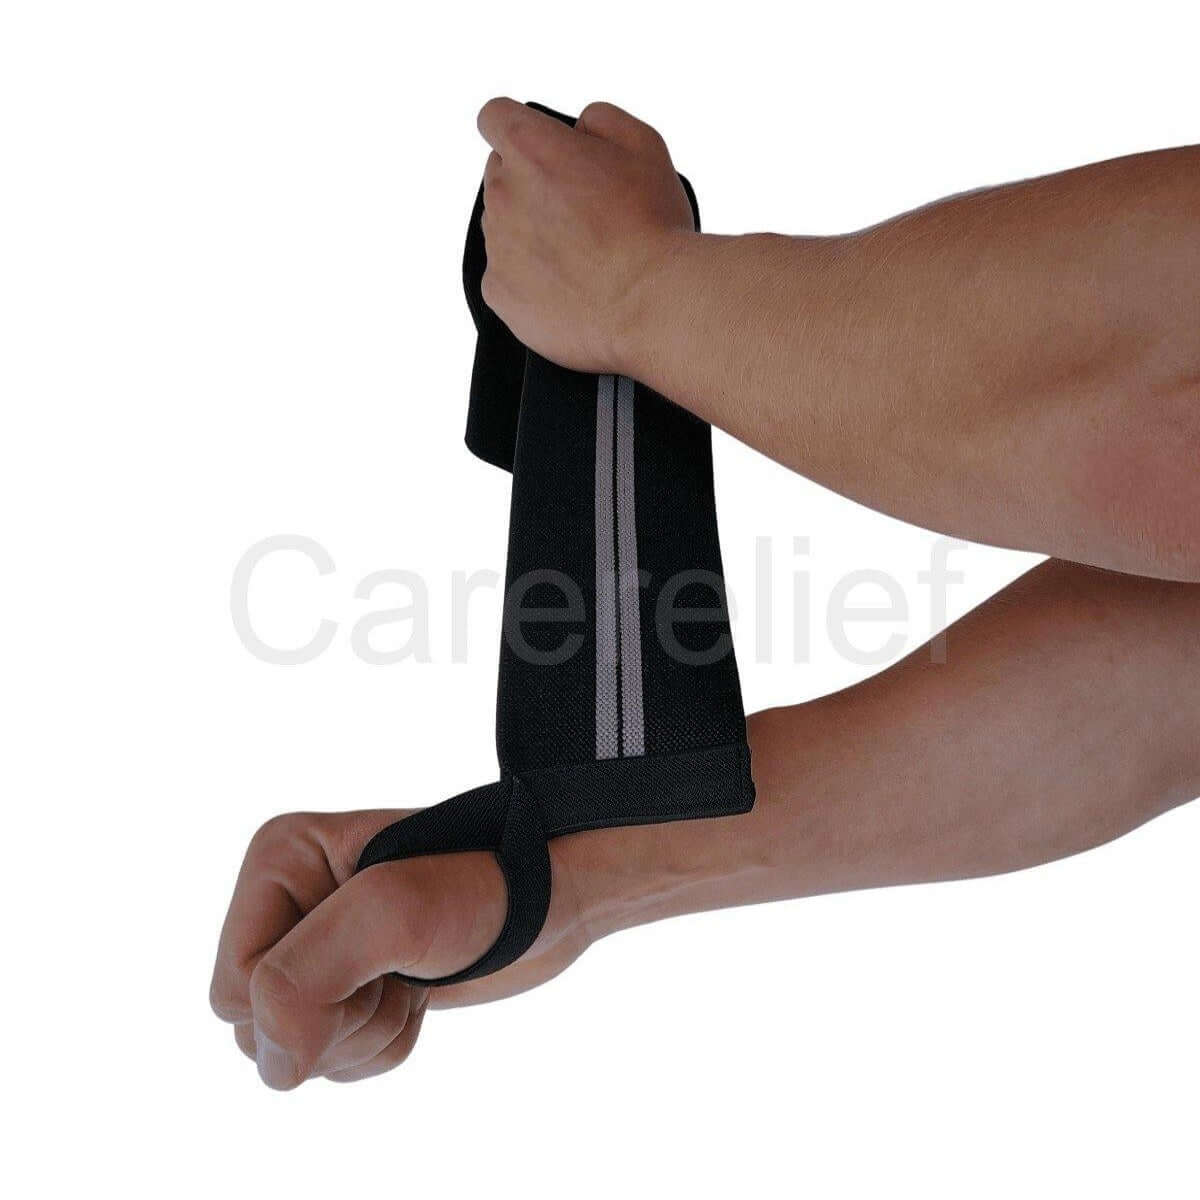 Wrist wraps sæt 55 cm til crossfit og træning med tunge løft. Køb håndledsbind med håndledsstøtte til sport og træning i sort/grå hos Carerelief.dk